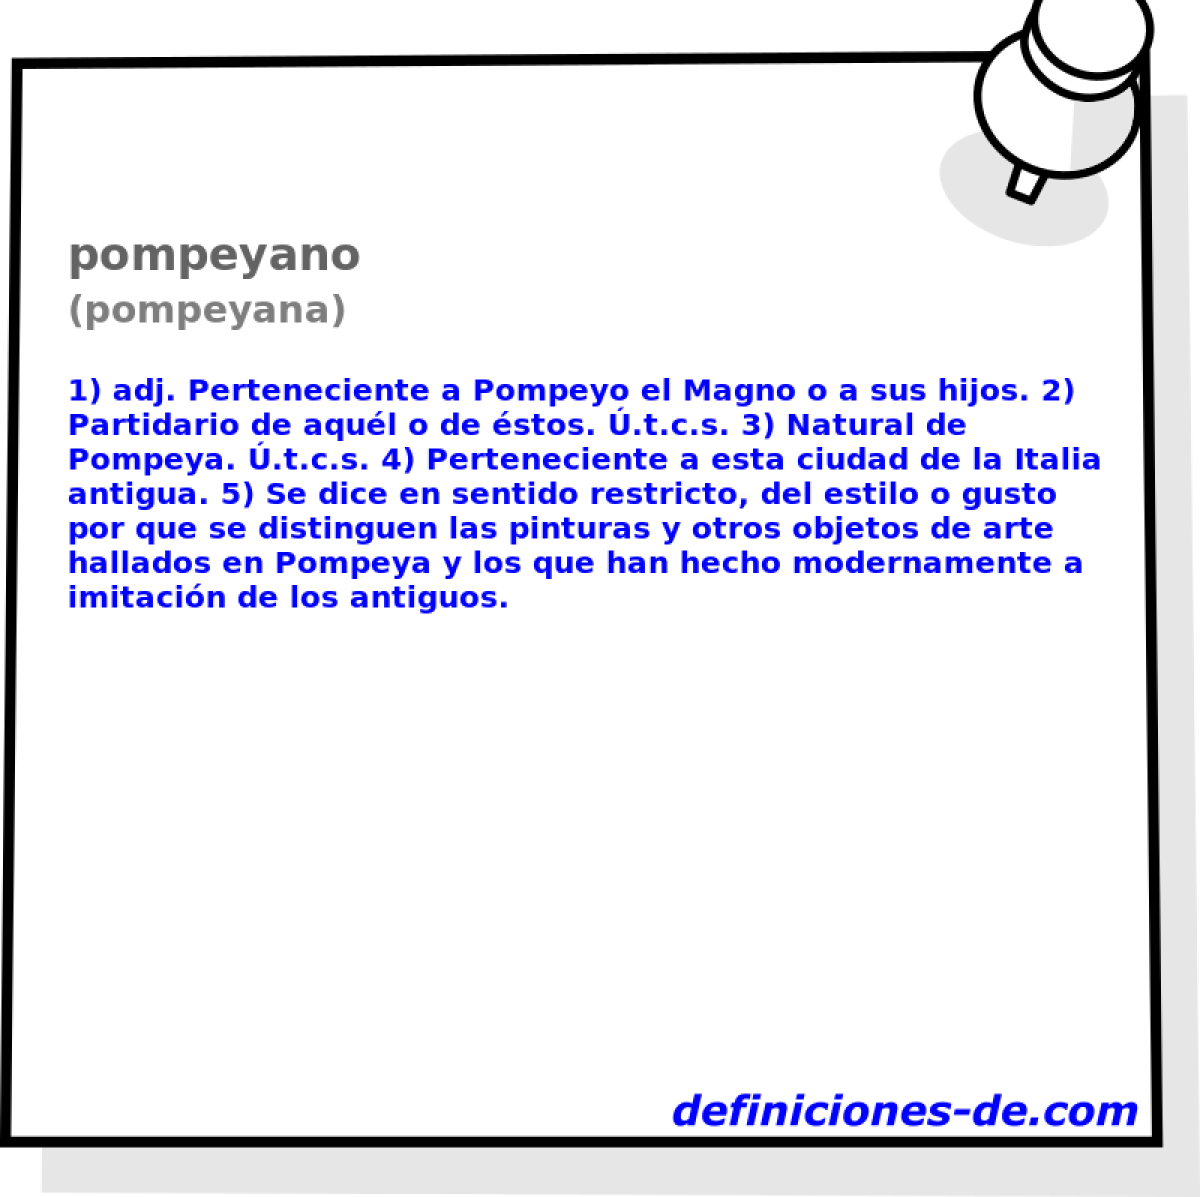 pompeyano (pompeyana)